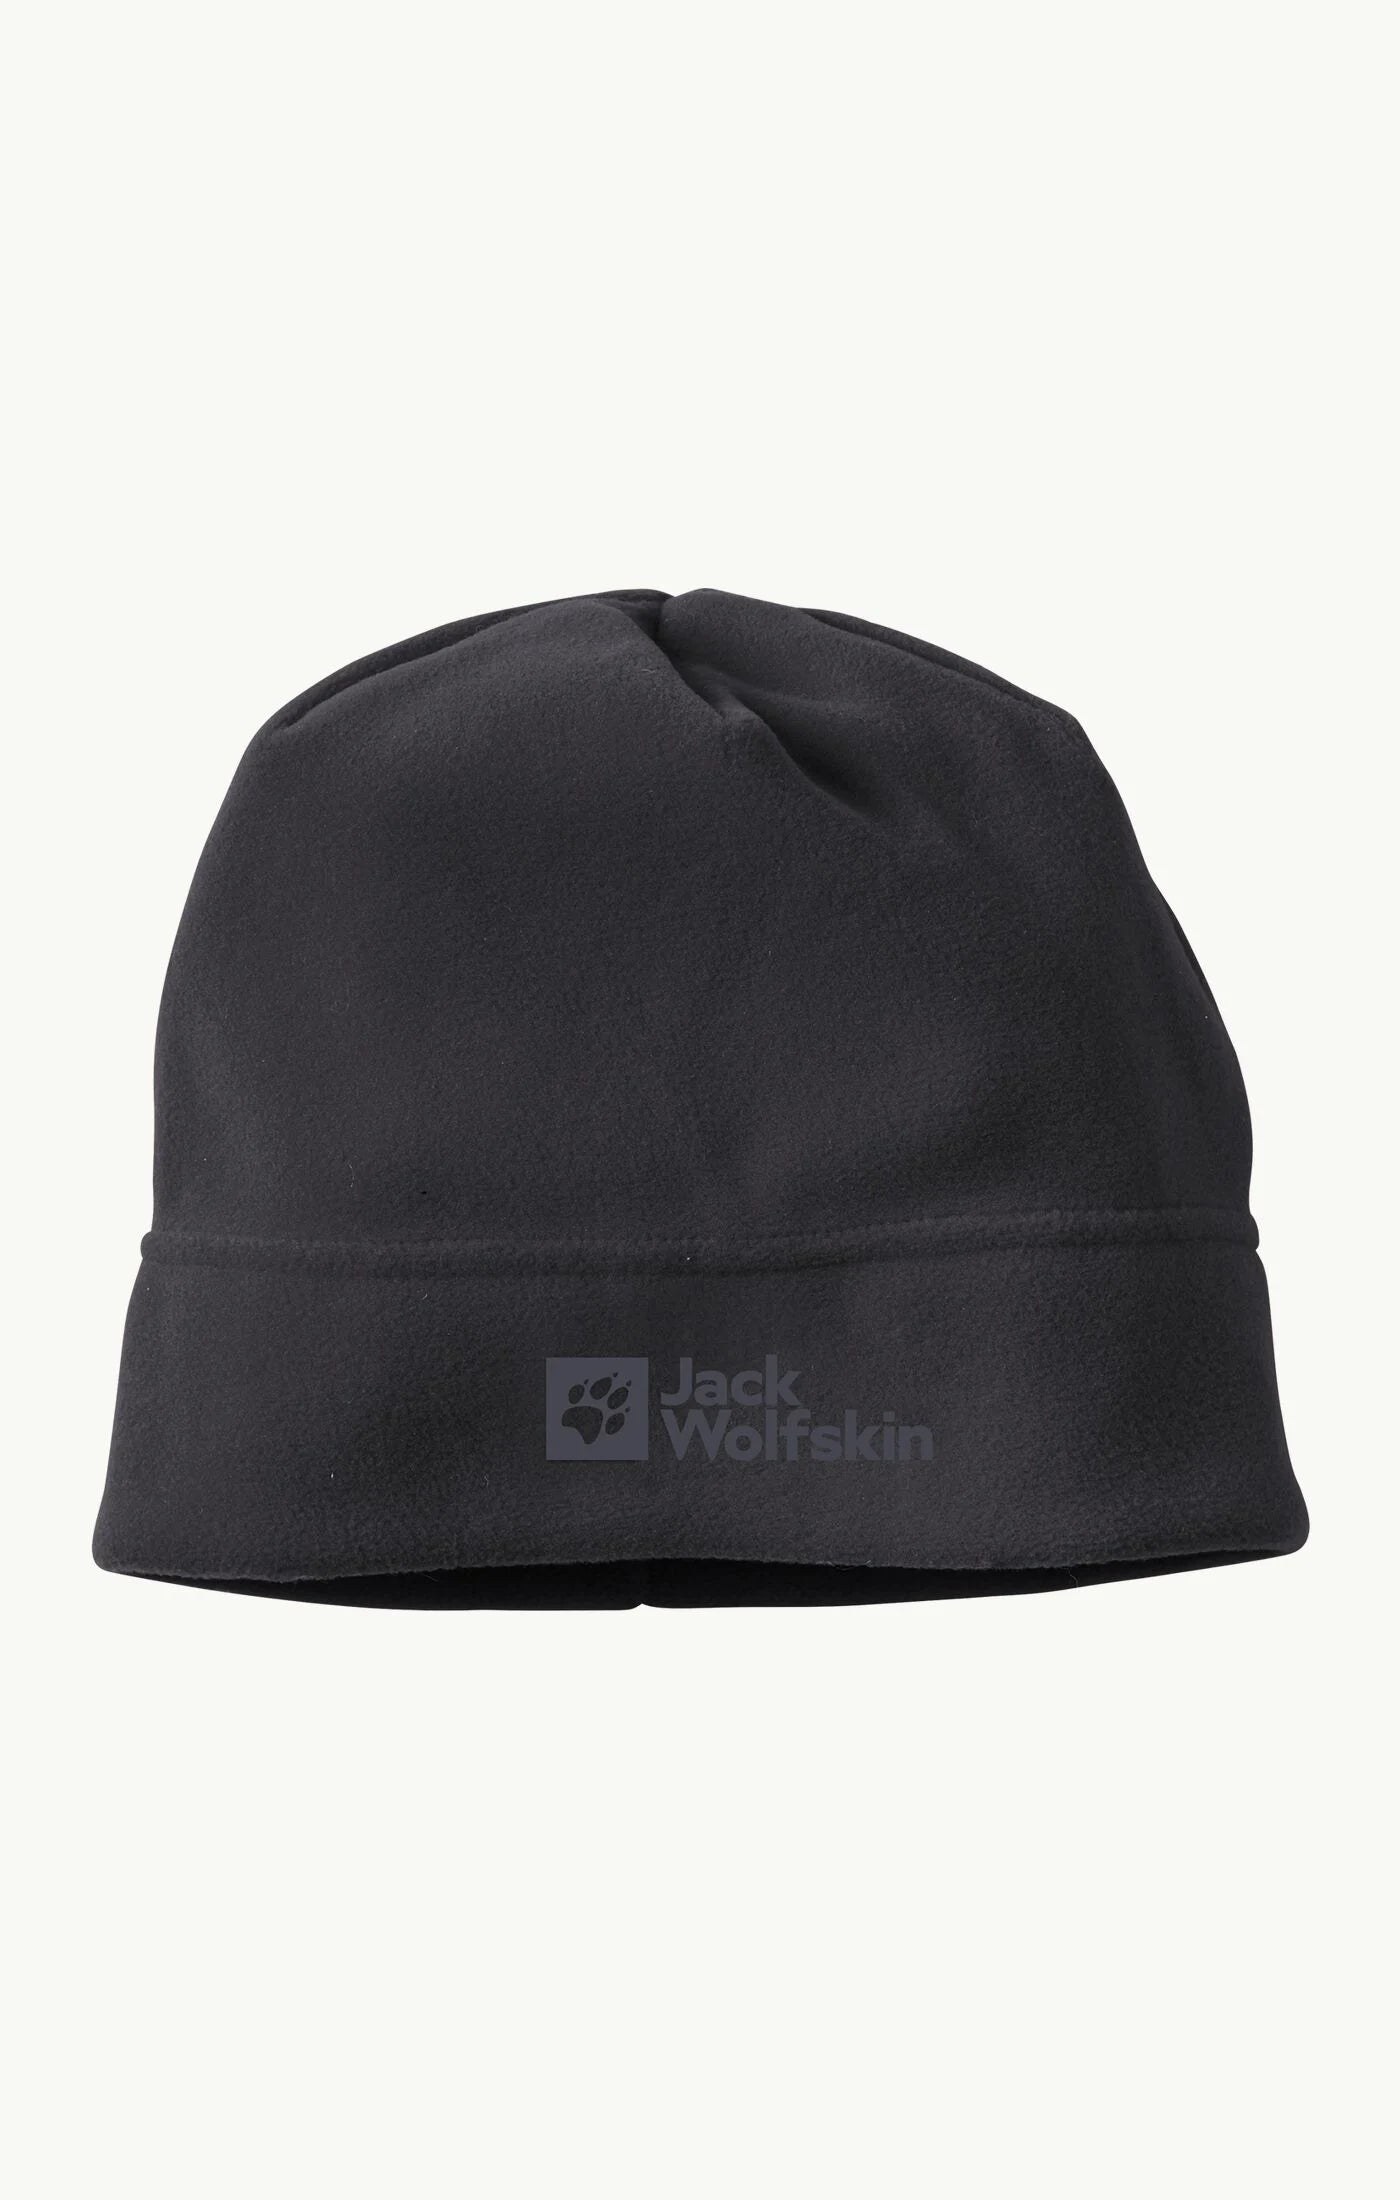 Jack Wolfskin Real Stuff Beanie Fleece Hat